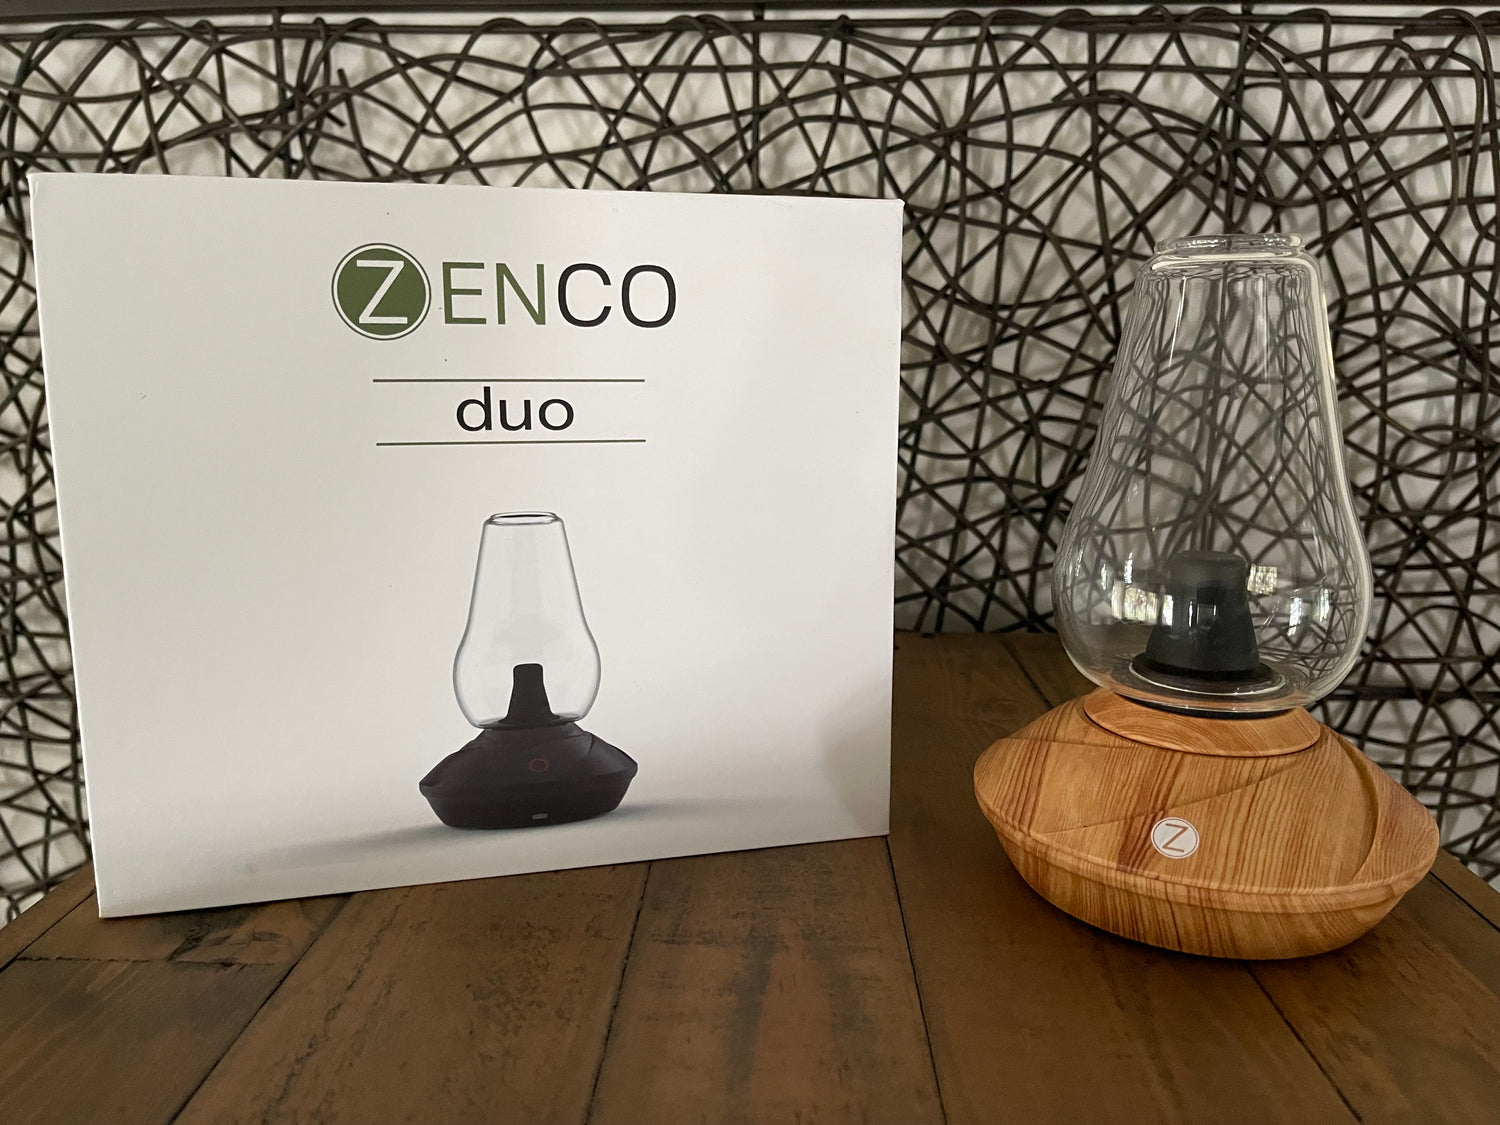 To-Go Cup Glassware – Zenco Usa